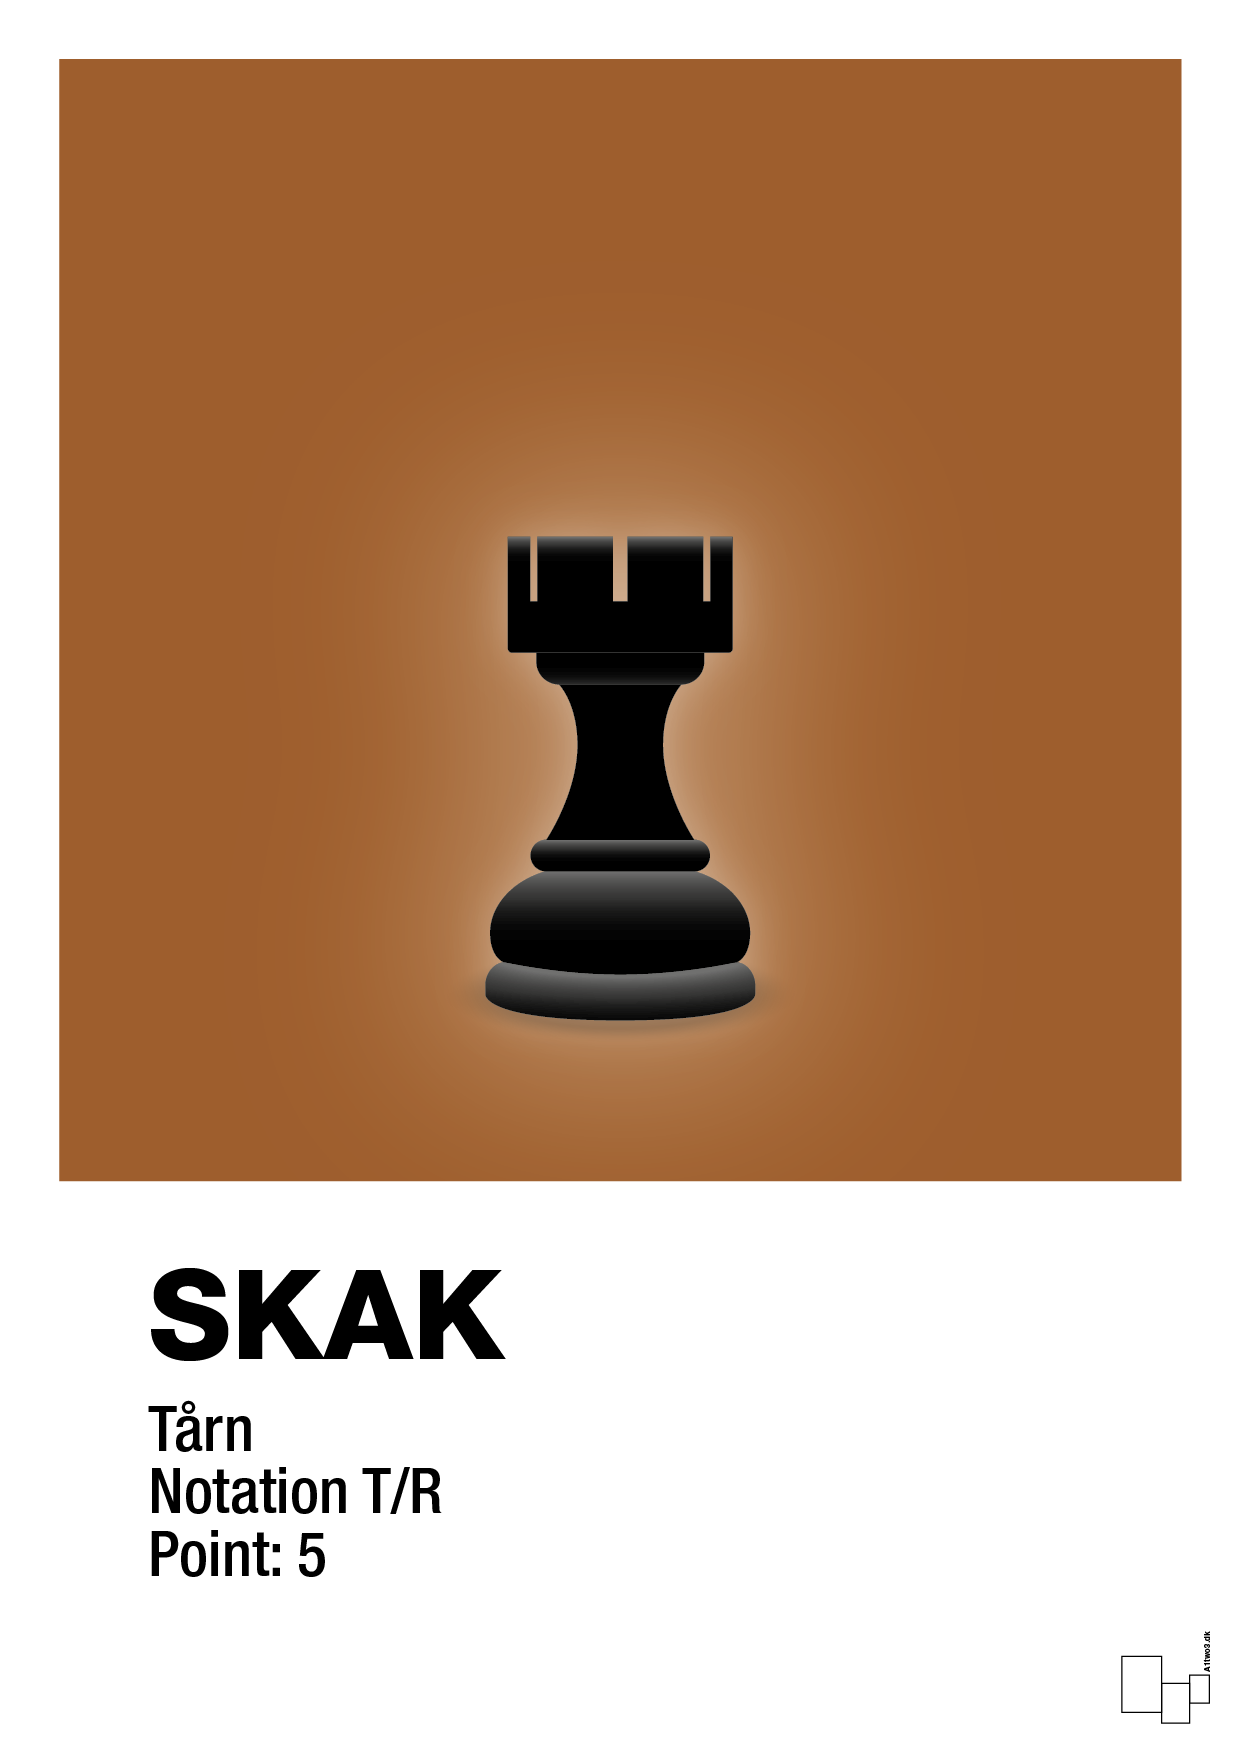 plakat: spillebrikken tårn i sort